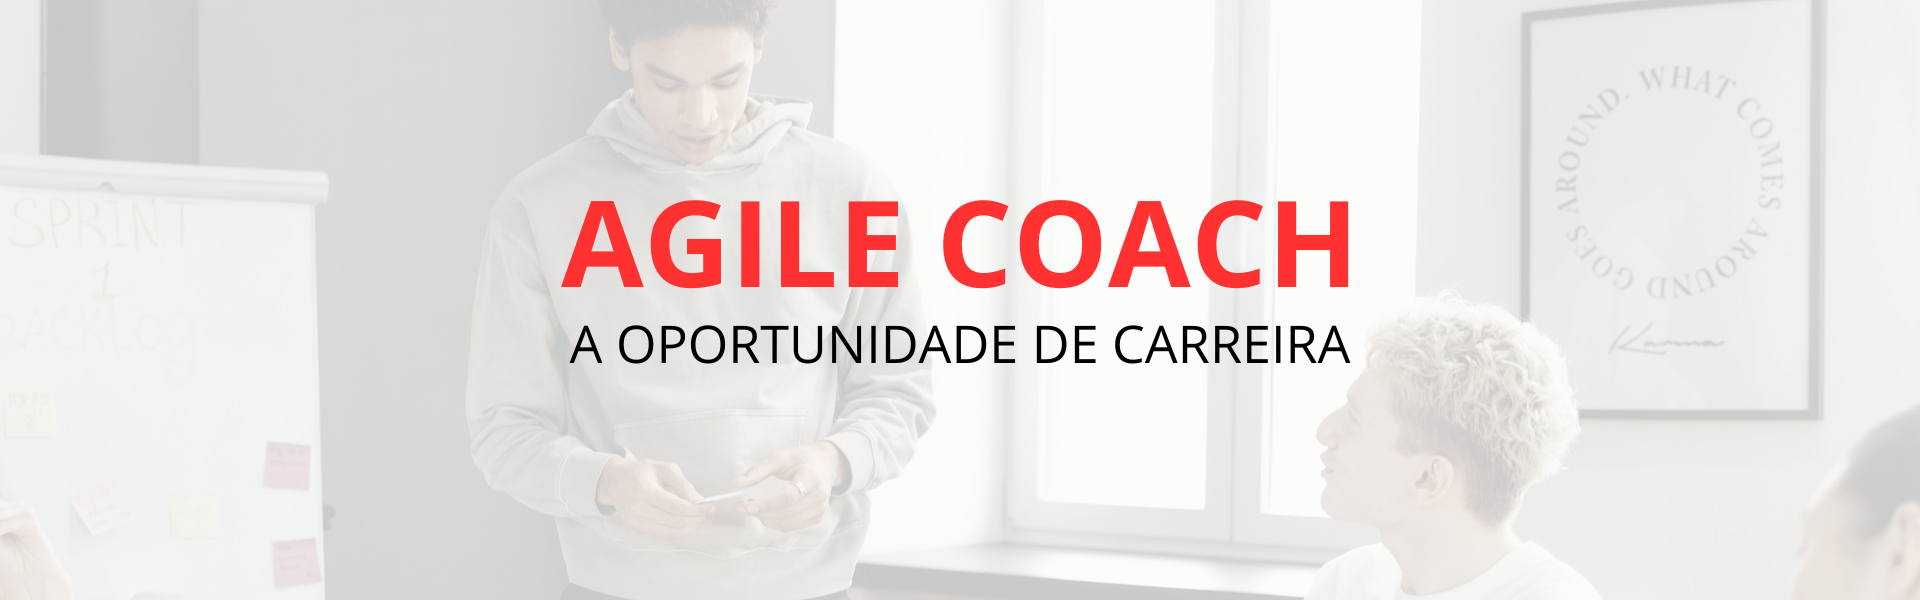 Agile Coach a oportunidadede carreira